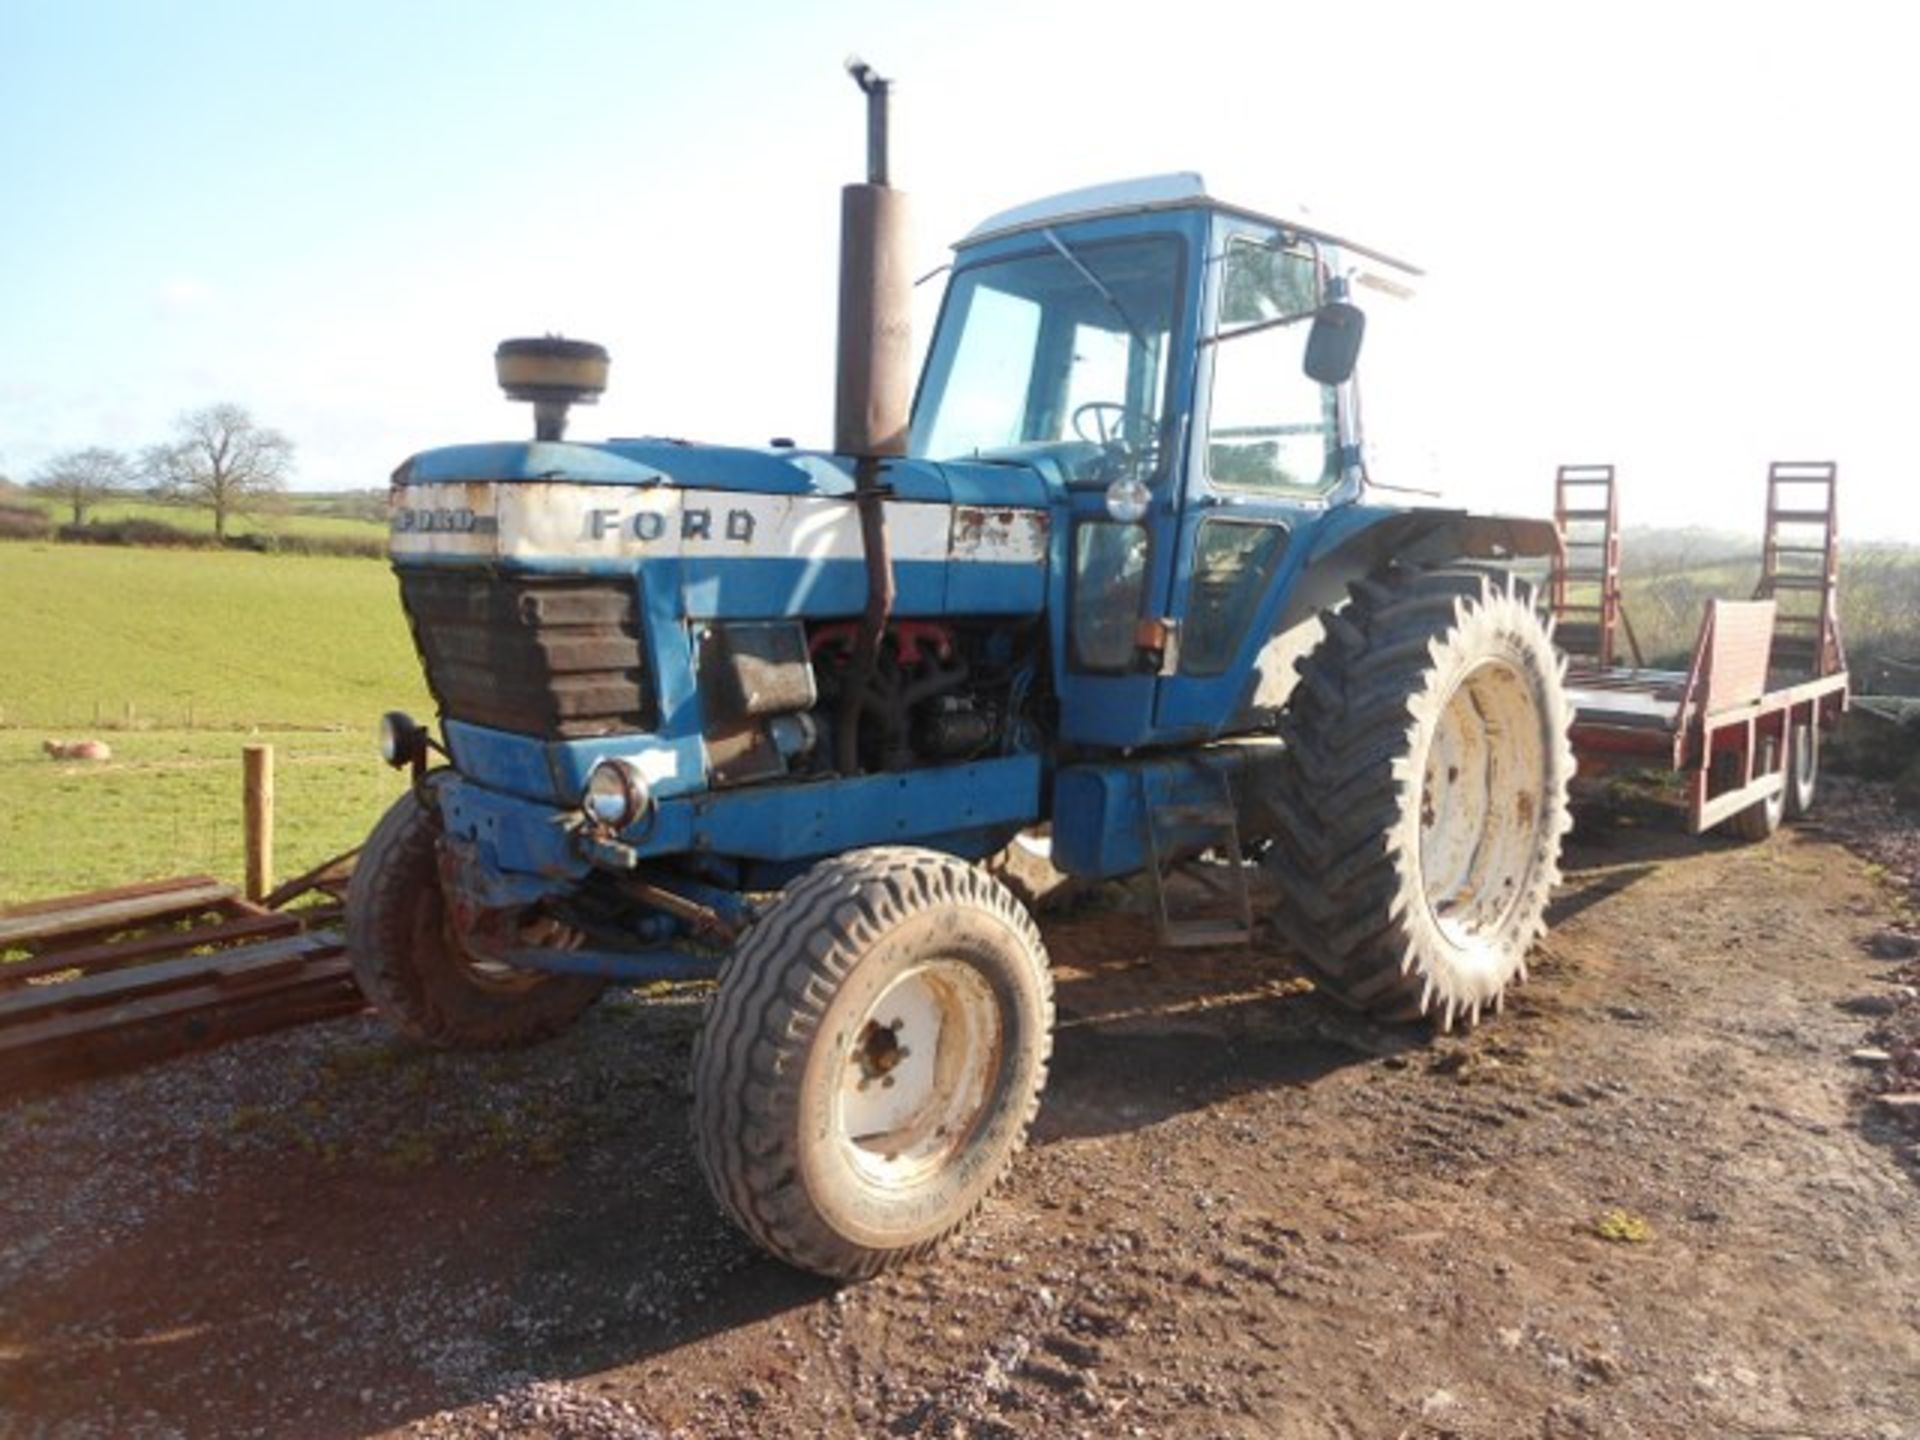 1977/8 Ford 8100 2wd Tractor. Location Tiverton, Devon